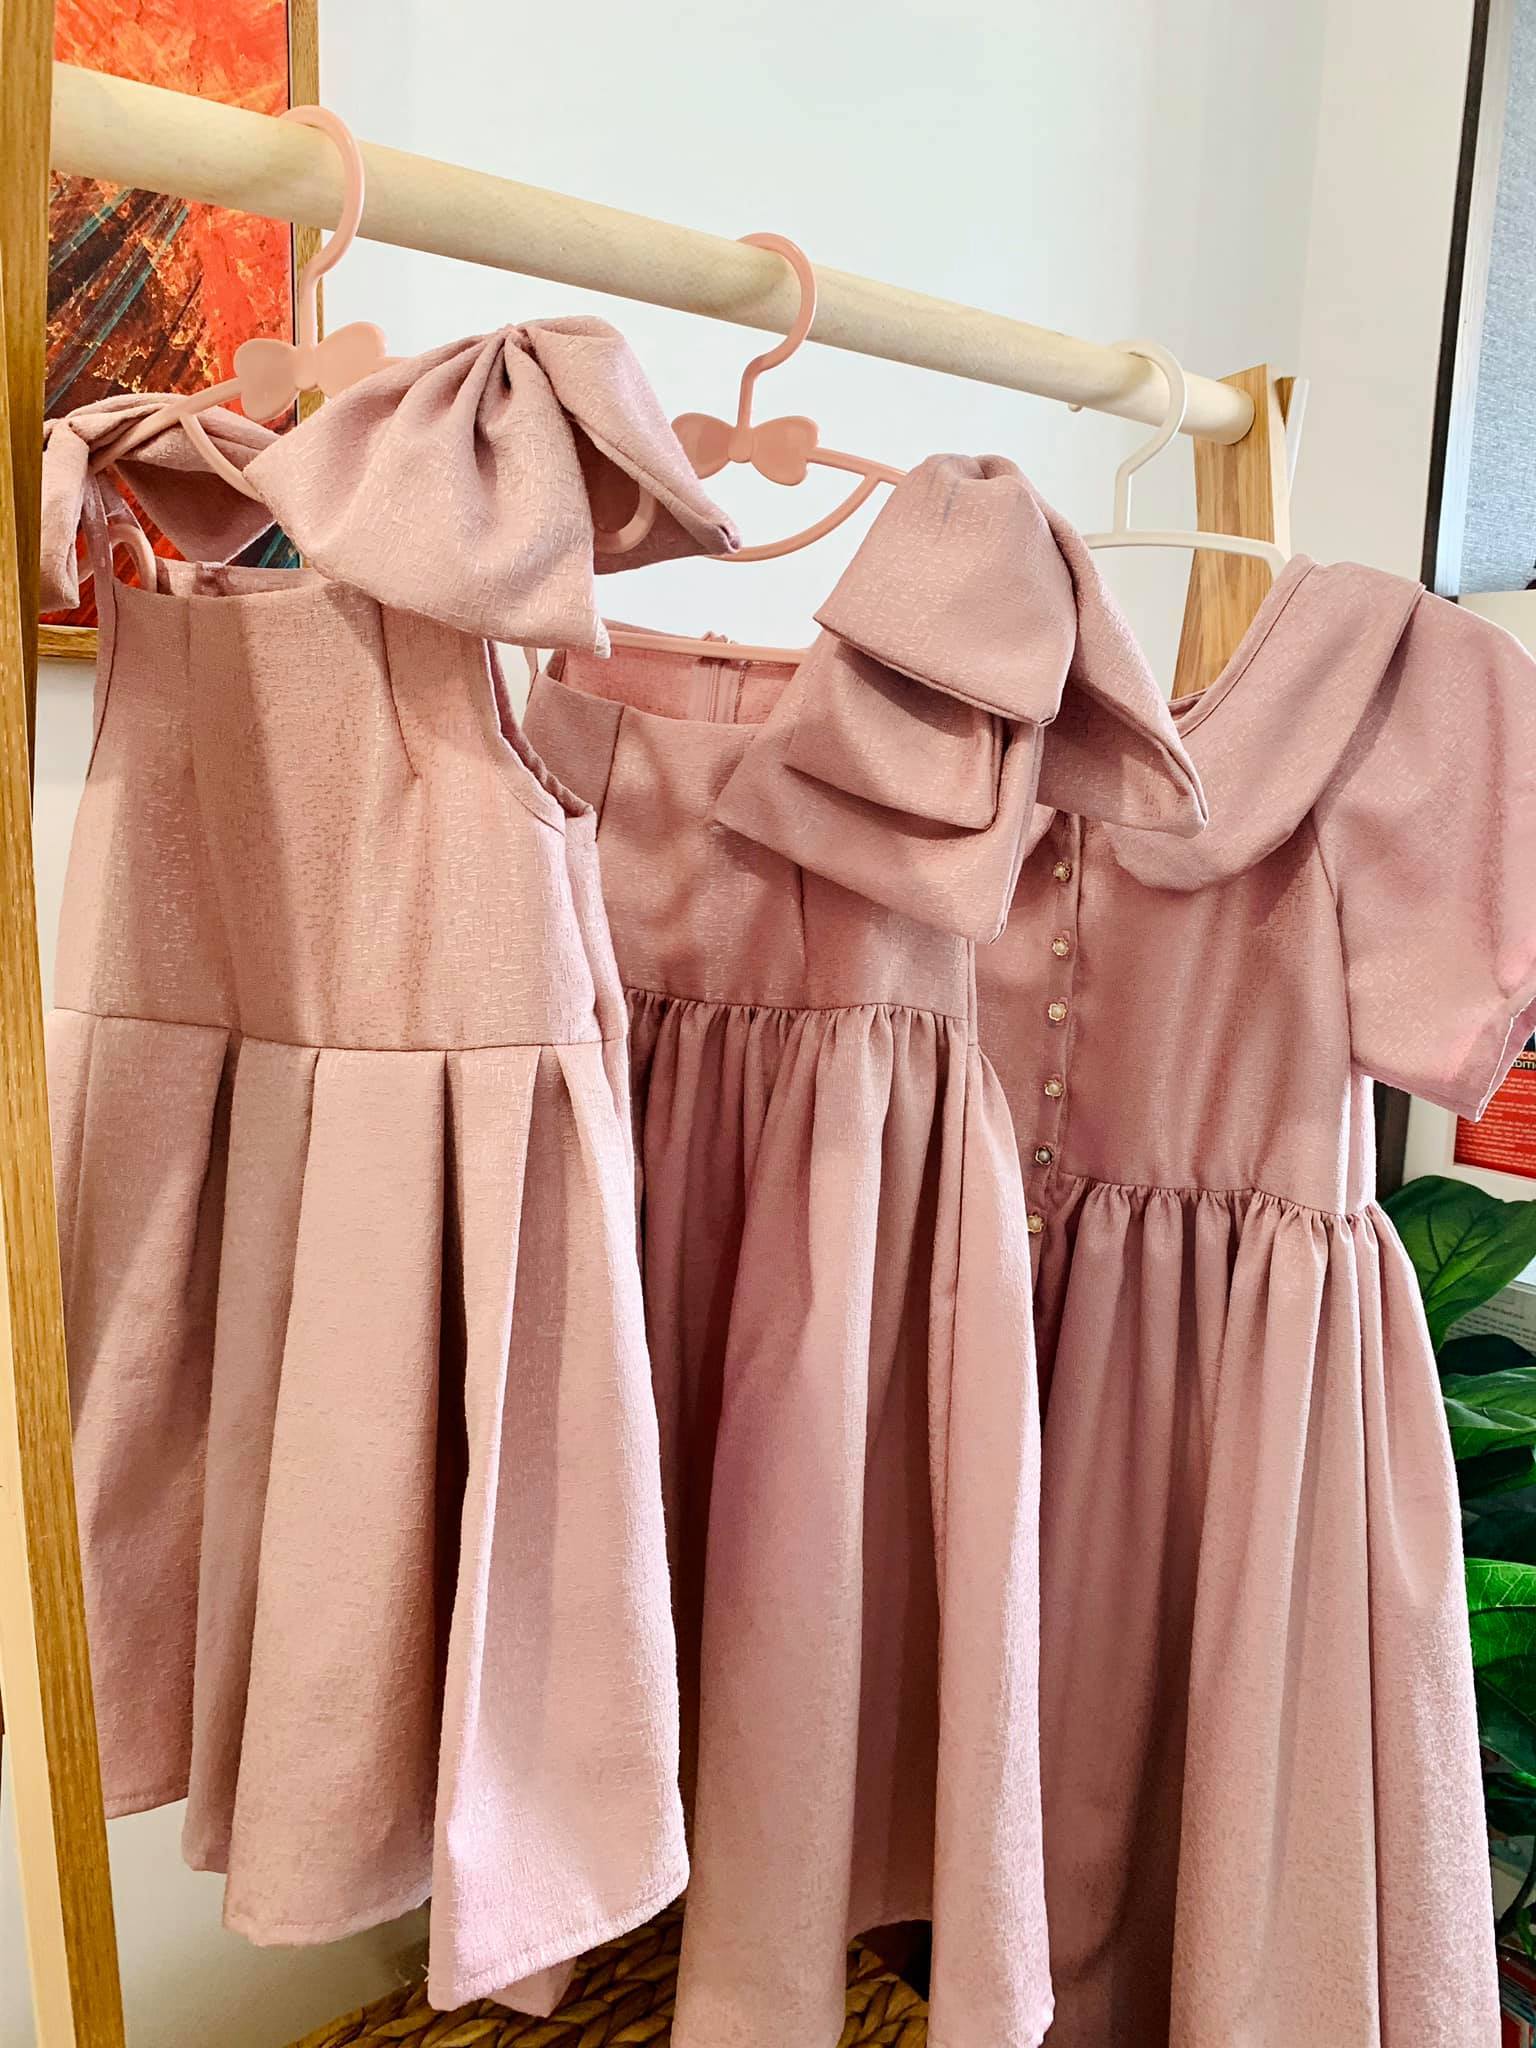 Mẹ đảm Quảng Ninh tự tay may cả bộ sưu tập váy 'cưng xỉu' cho hai con gái